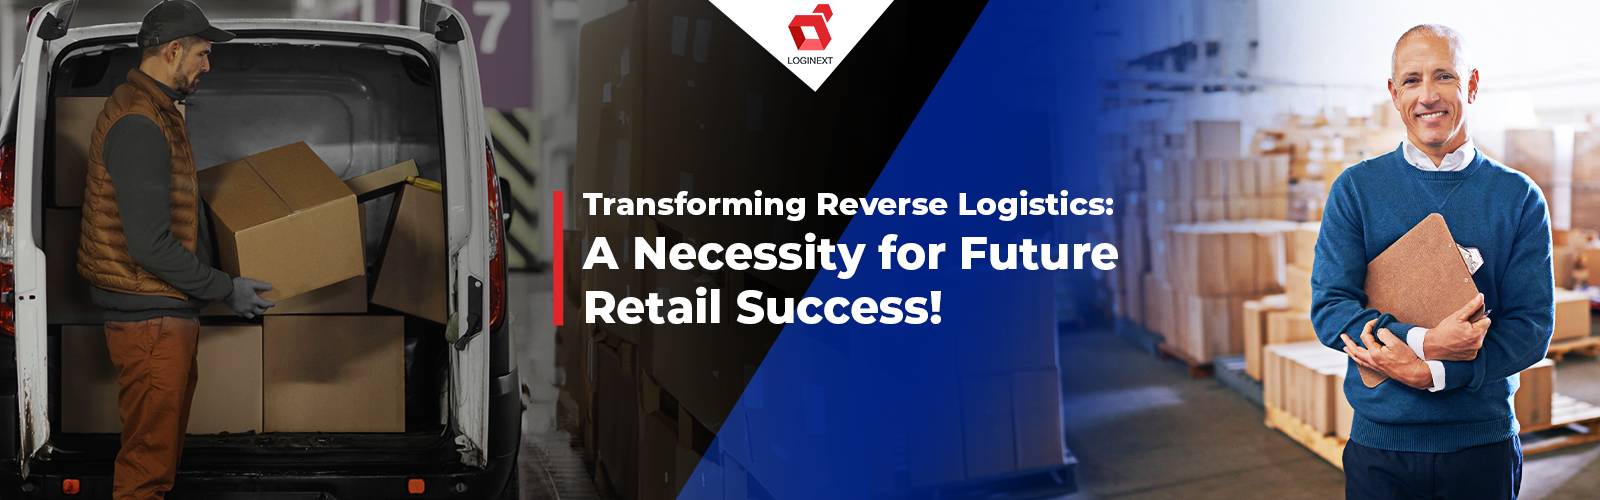 Transformation der Reverse-Logistik: Eine Notwendigkeit für den zukünftigen Einzelhandelserfolg!